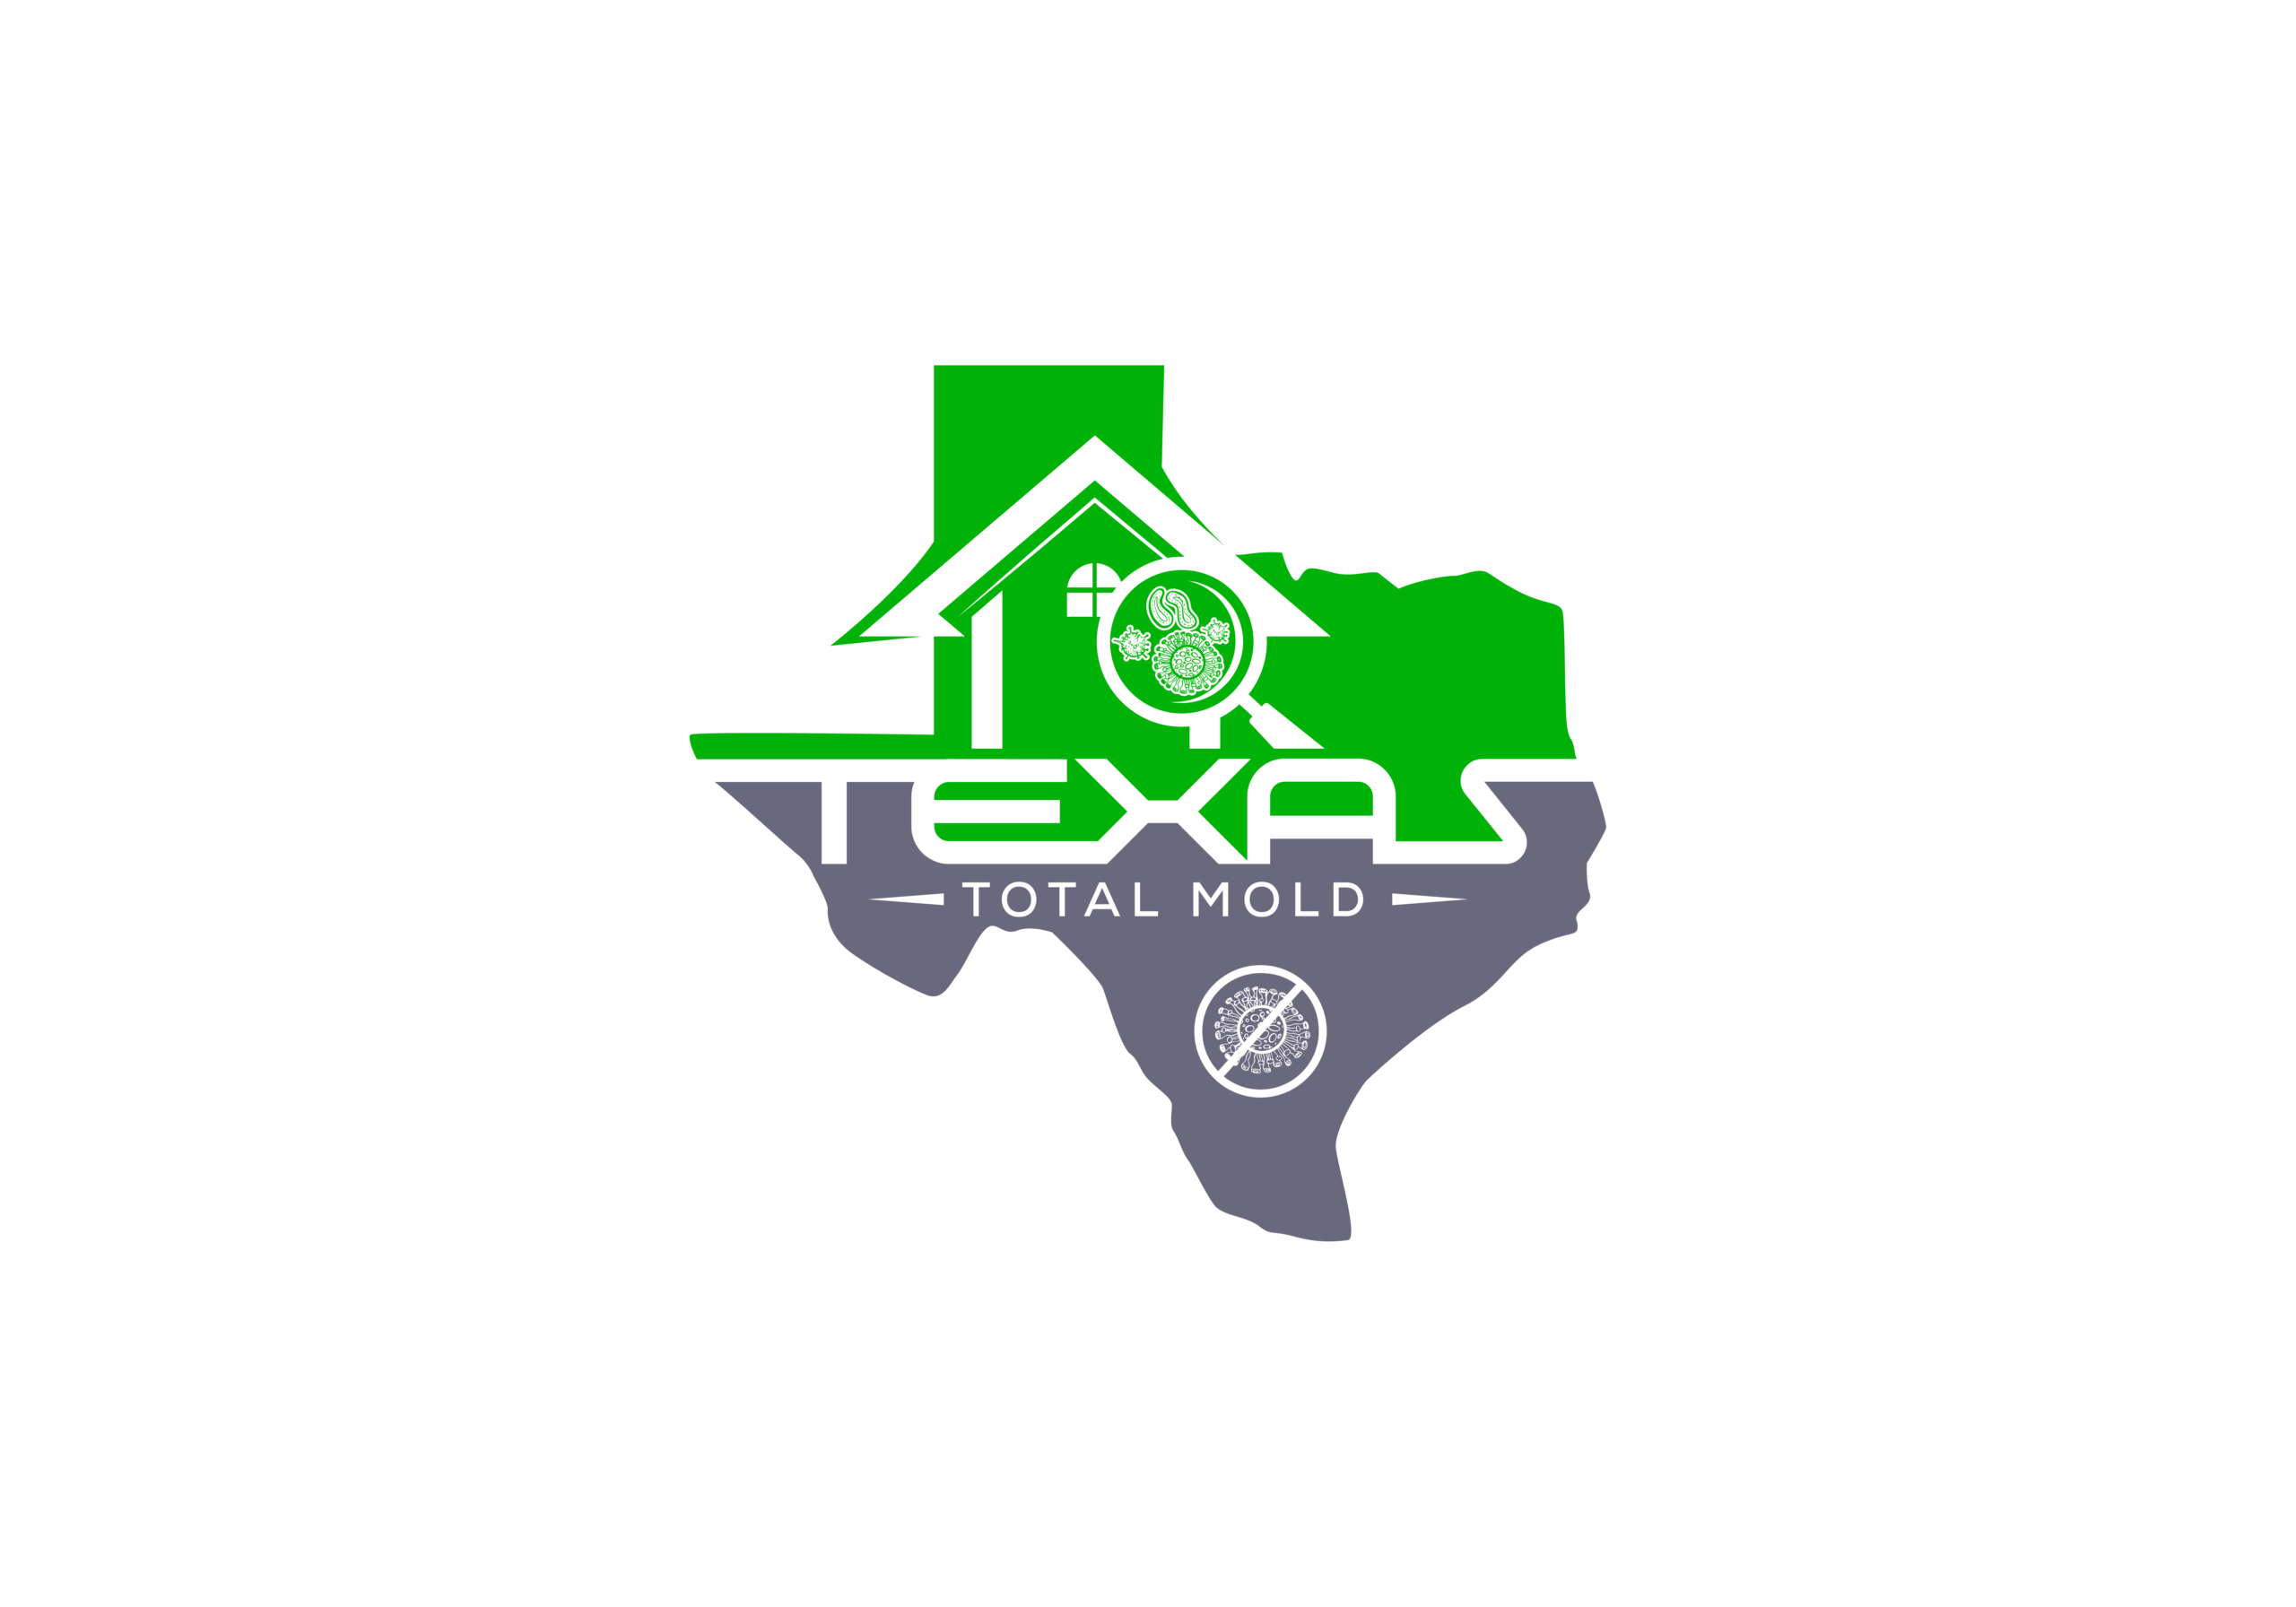 Texas Total Mold